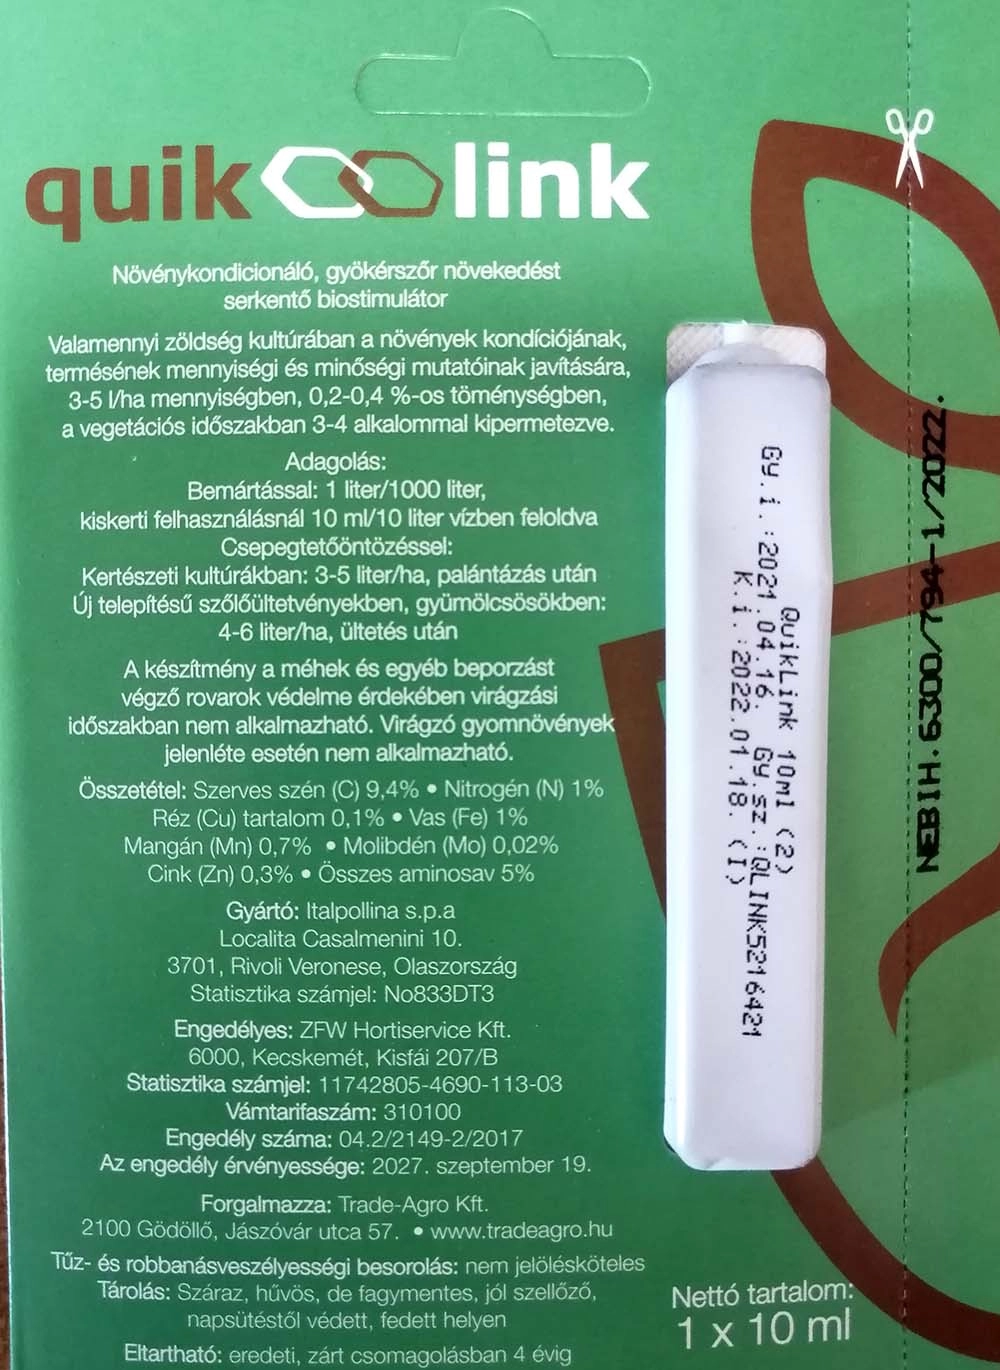 Quik Link gyökeresedést segítő növénykondícionáló készítmény 10 ml